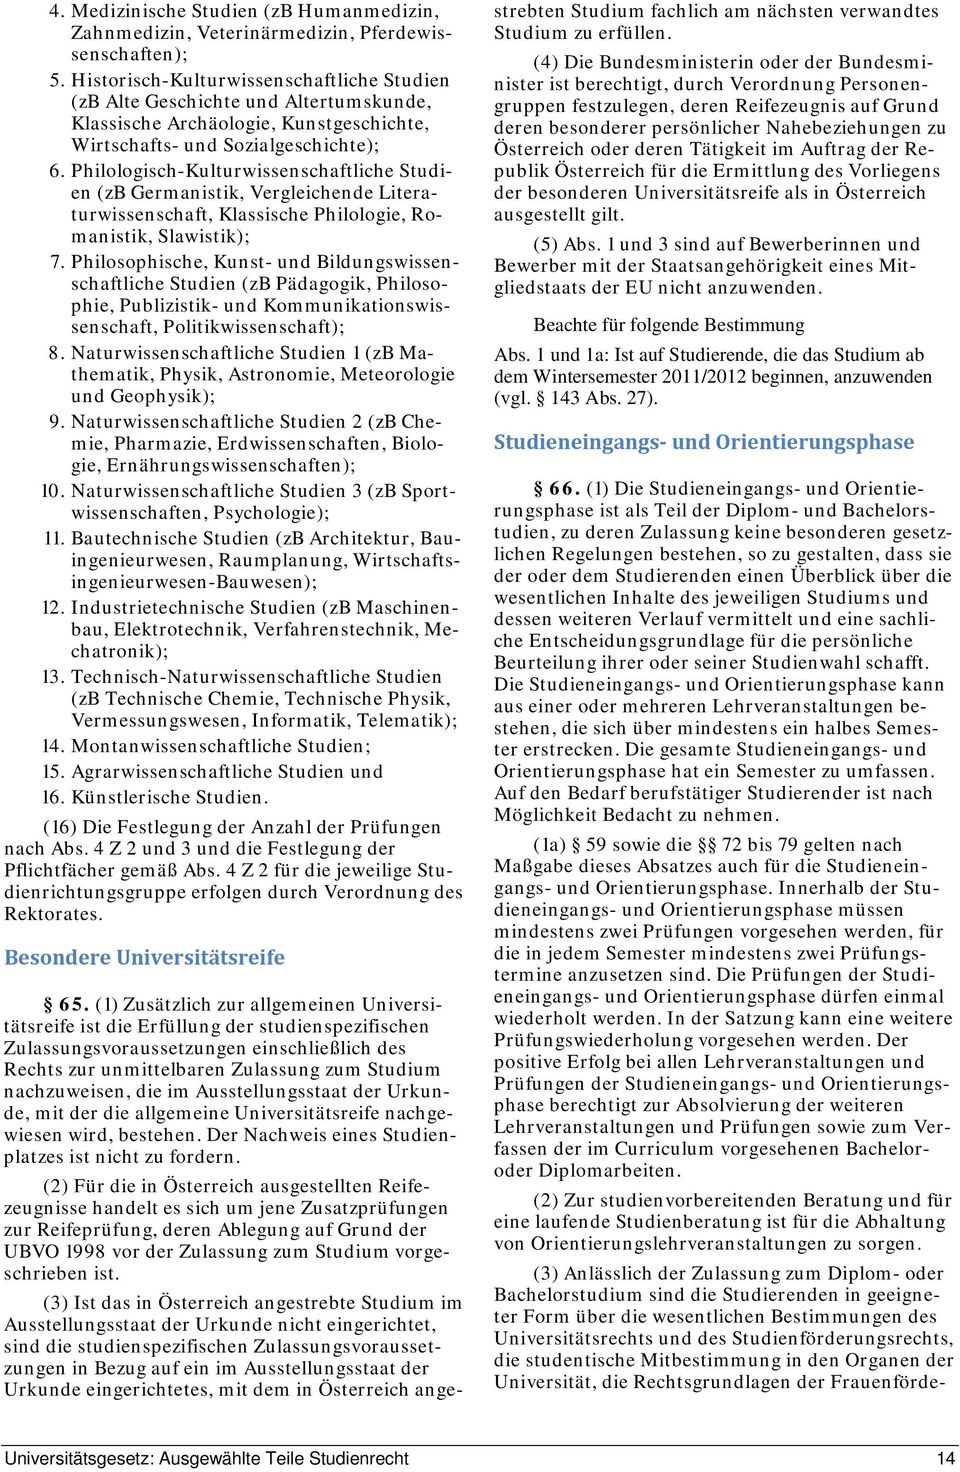 Philologisch-Kulturwissenschaftliche Studien (zb Germanistik, Vergleichende Literaturwissenschaft, Klassische Philologie, Romanistik, Slawistik); 7.